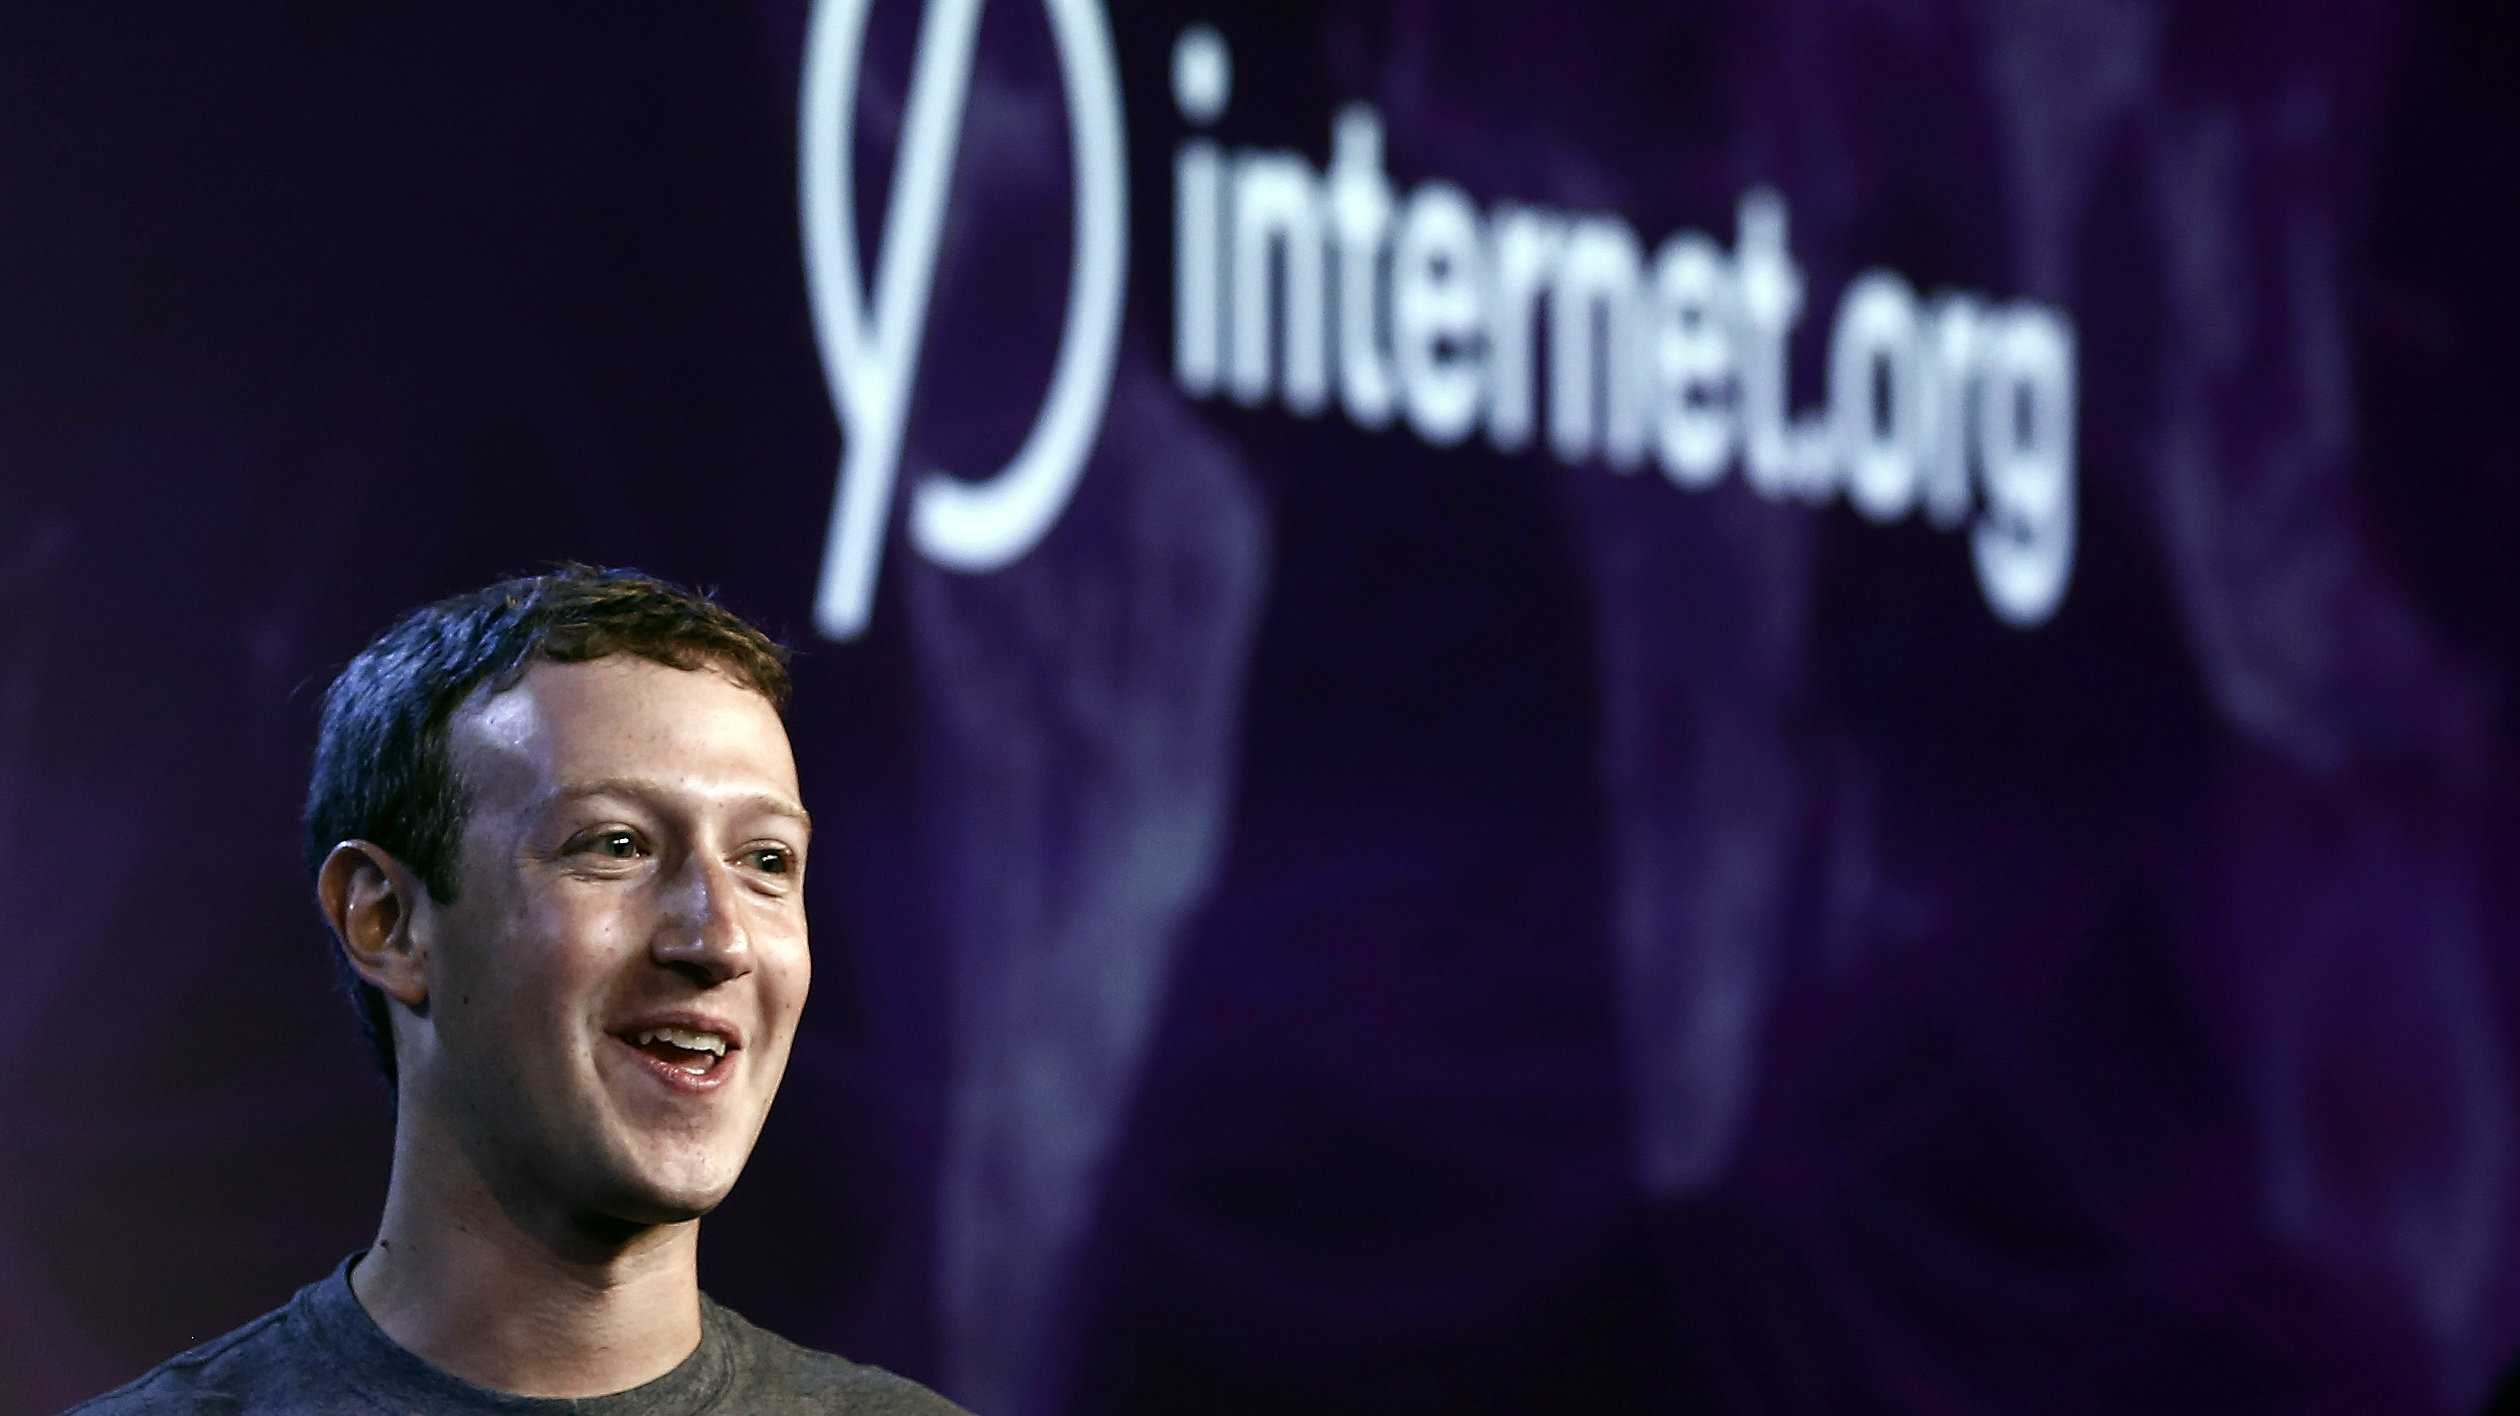 Facebook CEO Mark Zuckerburg